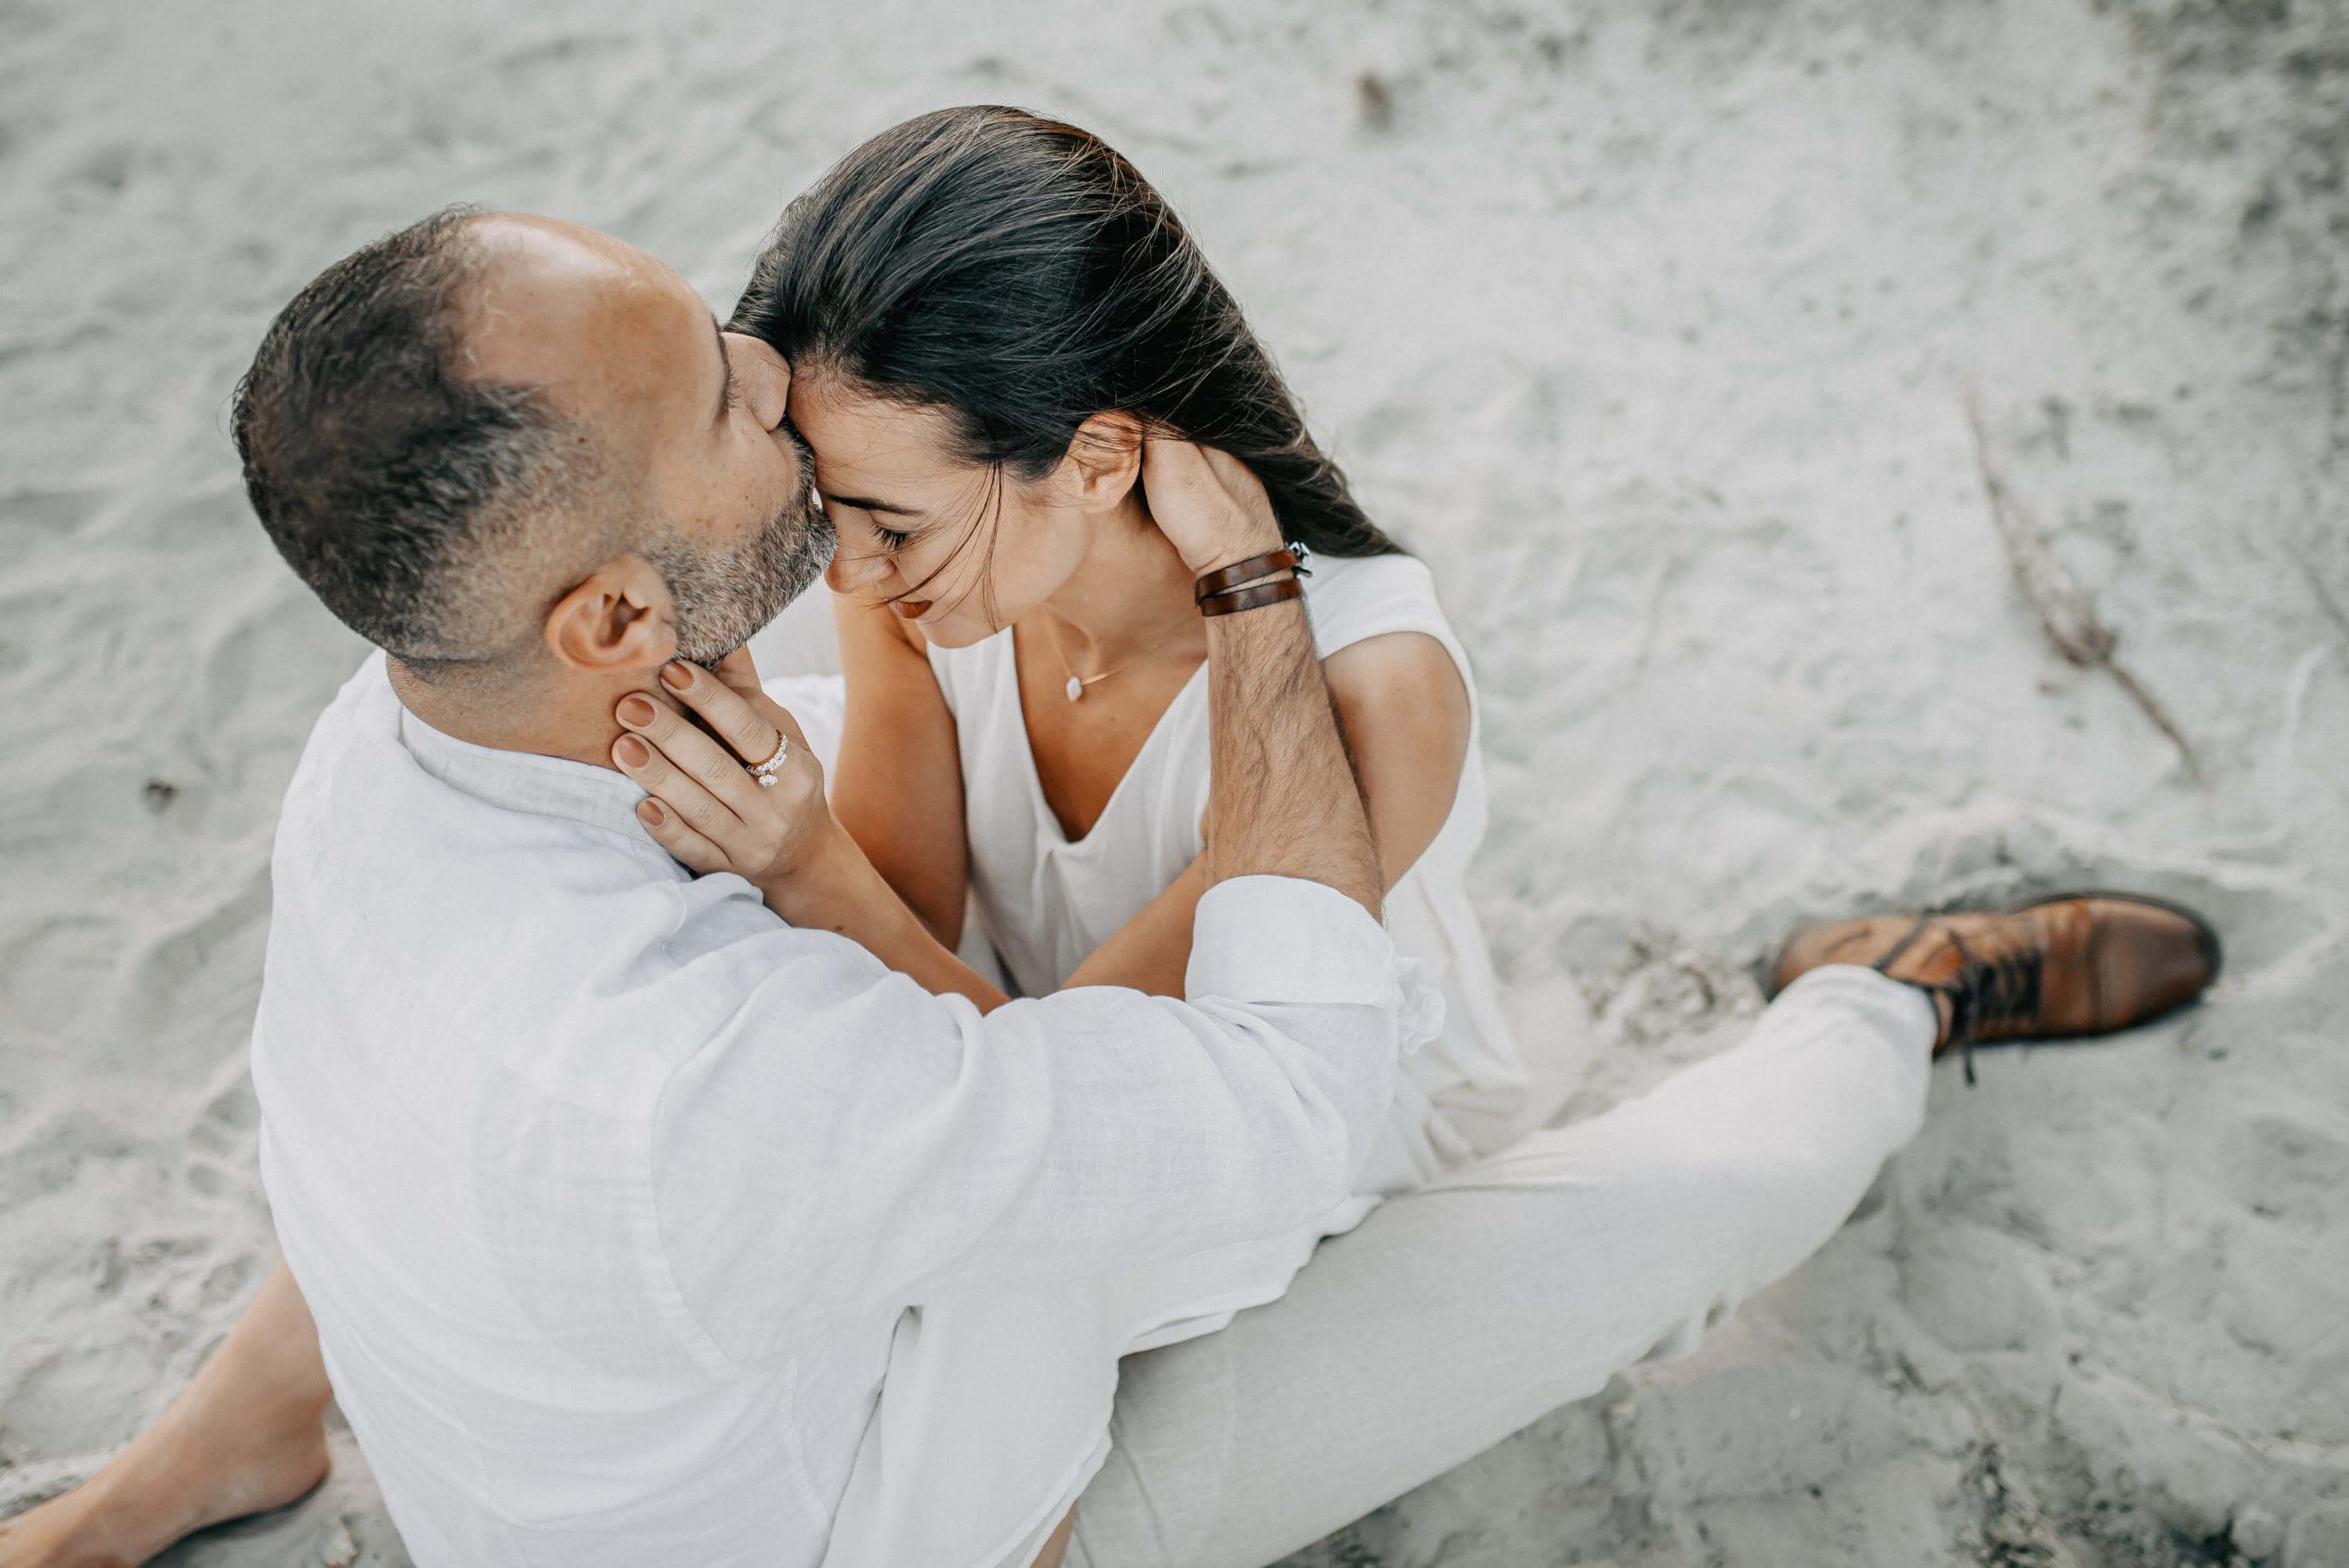 Im Sand der Heide-Landschaft eng umschlungen sitzend, küsst ein Mann seiner Frau auf die Stirn, während er ihren Kopf mit beiden Händen und sie ihre Augen geschlossen hält.